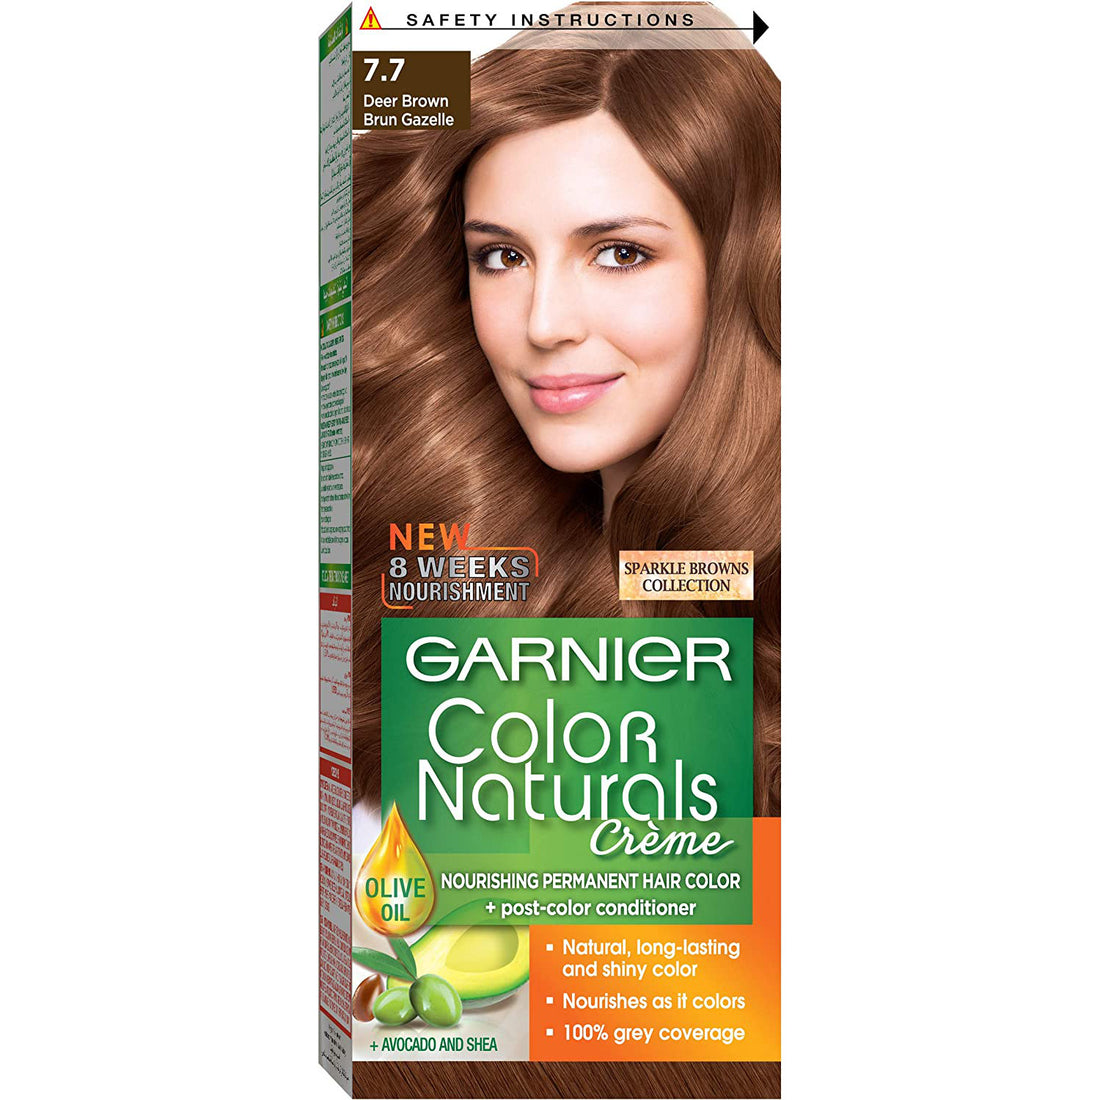 Garnier Color Naturals 7.7 Deer Brown